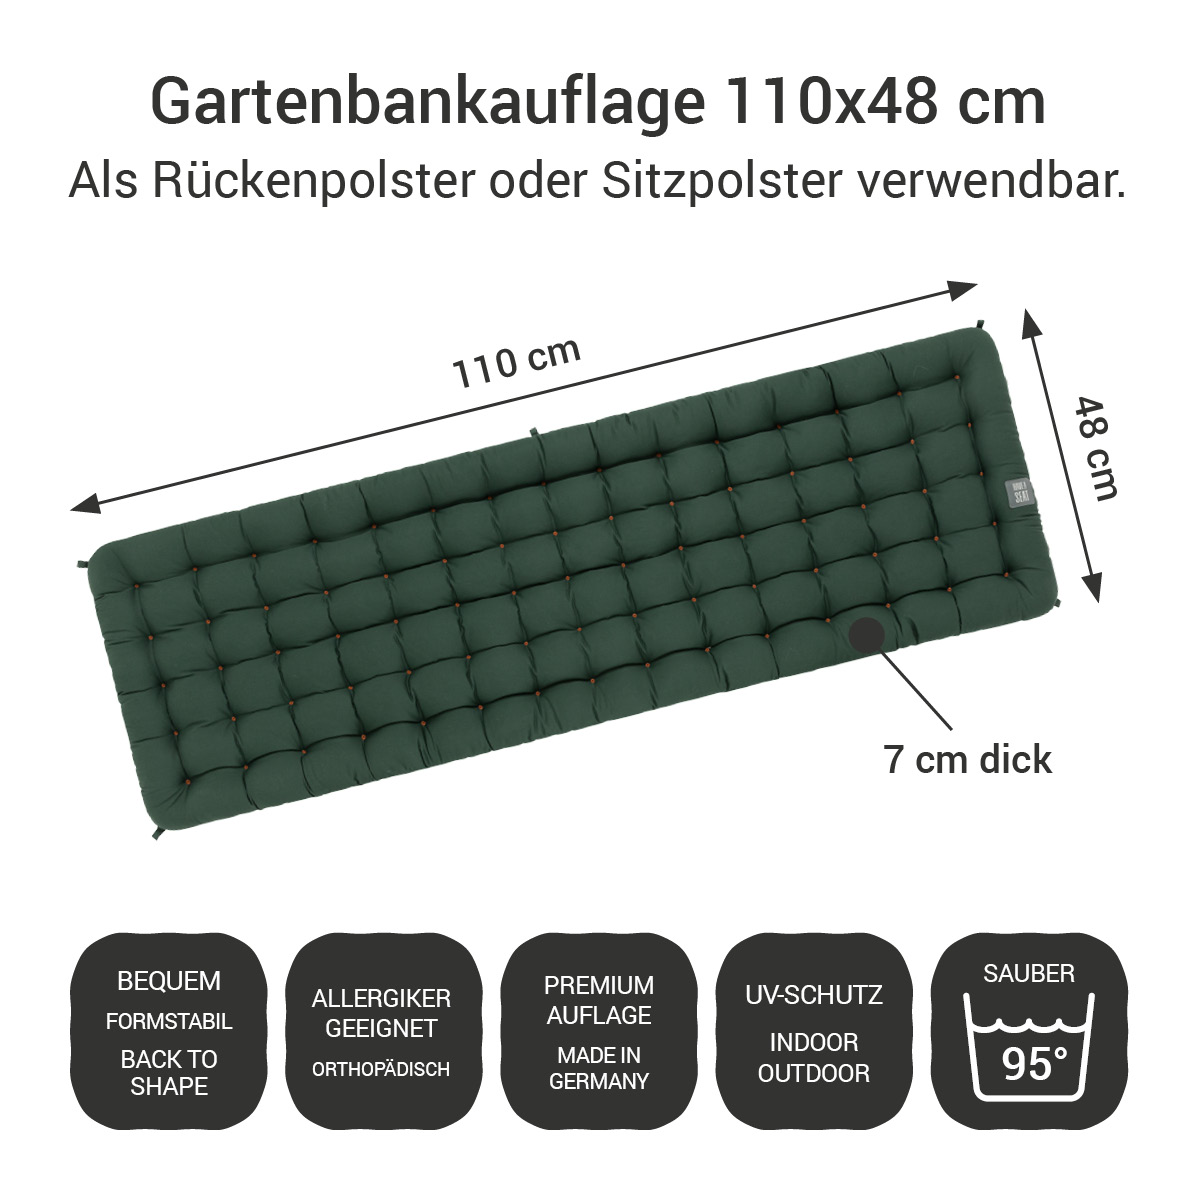 Gartenbankauflage dunkelgrün | 110x48 cm / 110 x 50 cm | bequem & orthopädisch, komplett im Ganzen waschbar bis 95°C, wetterfest, Made in Germany